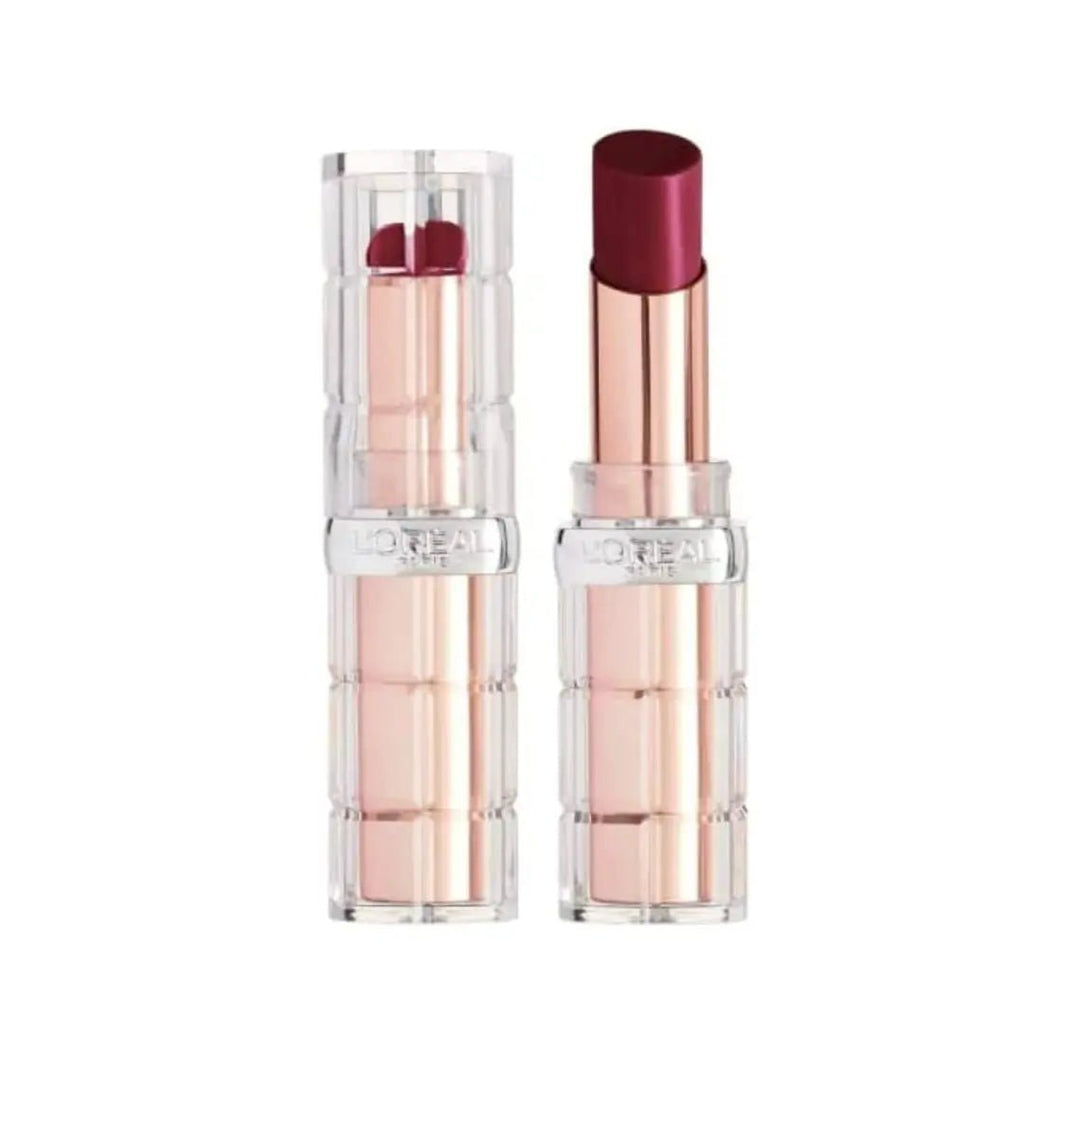 L'Oreal L'Oreal Color Riche Shine Lipstick - Wild Fig Plump